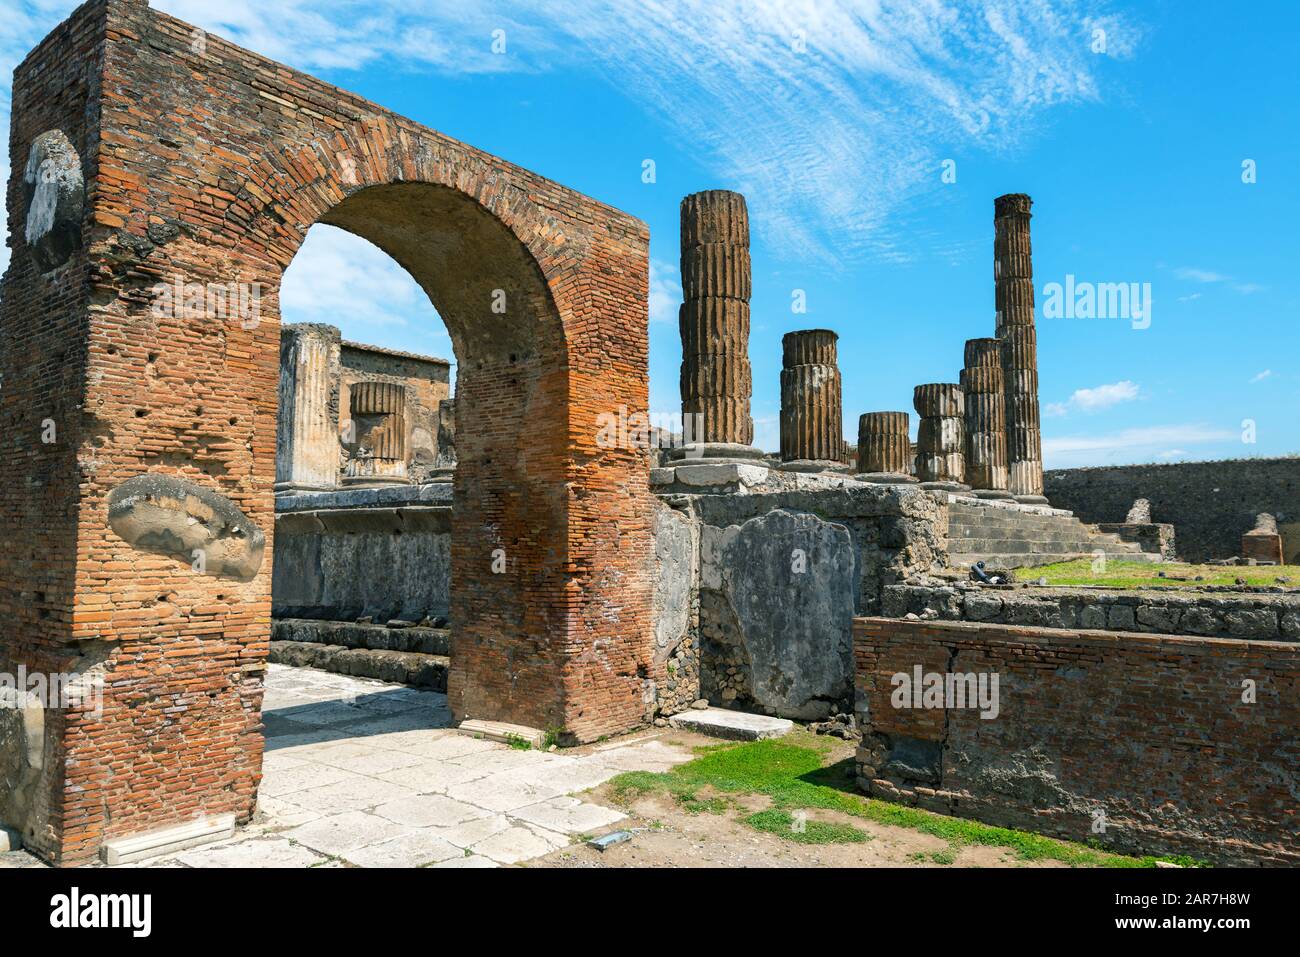 Die Ruinen des Jupitertempels in Pompeji, Italien. Pompeji ist eine antike römische Stadt, die durch den Ausbruch des Vesuvs im Jahr 79 n. Chr. starb. Stockfoto